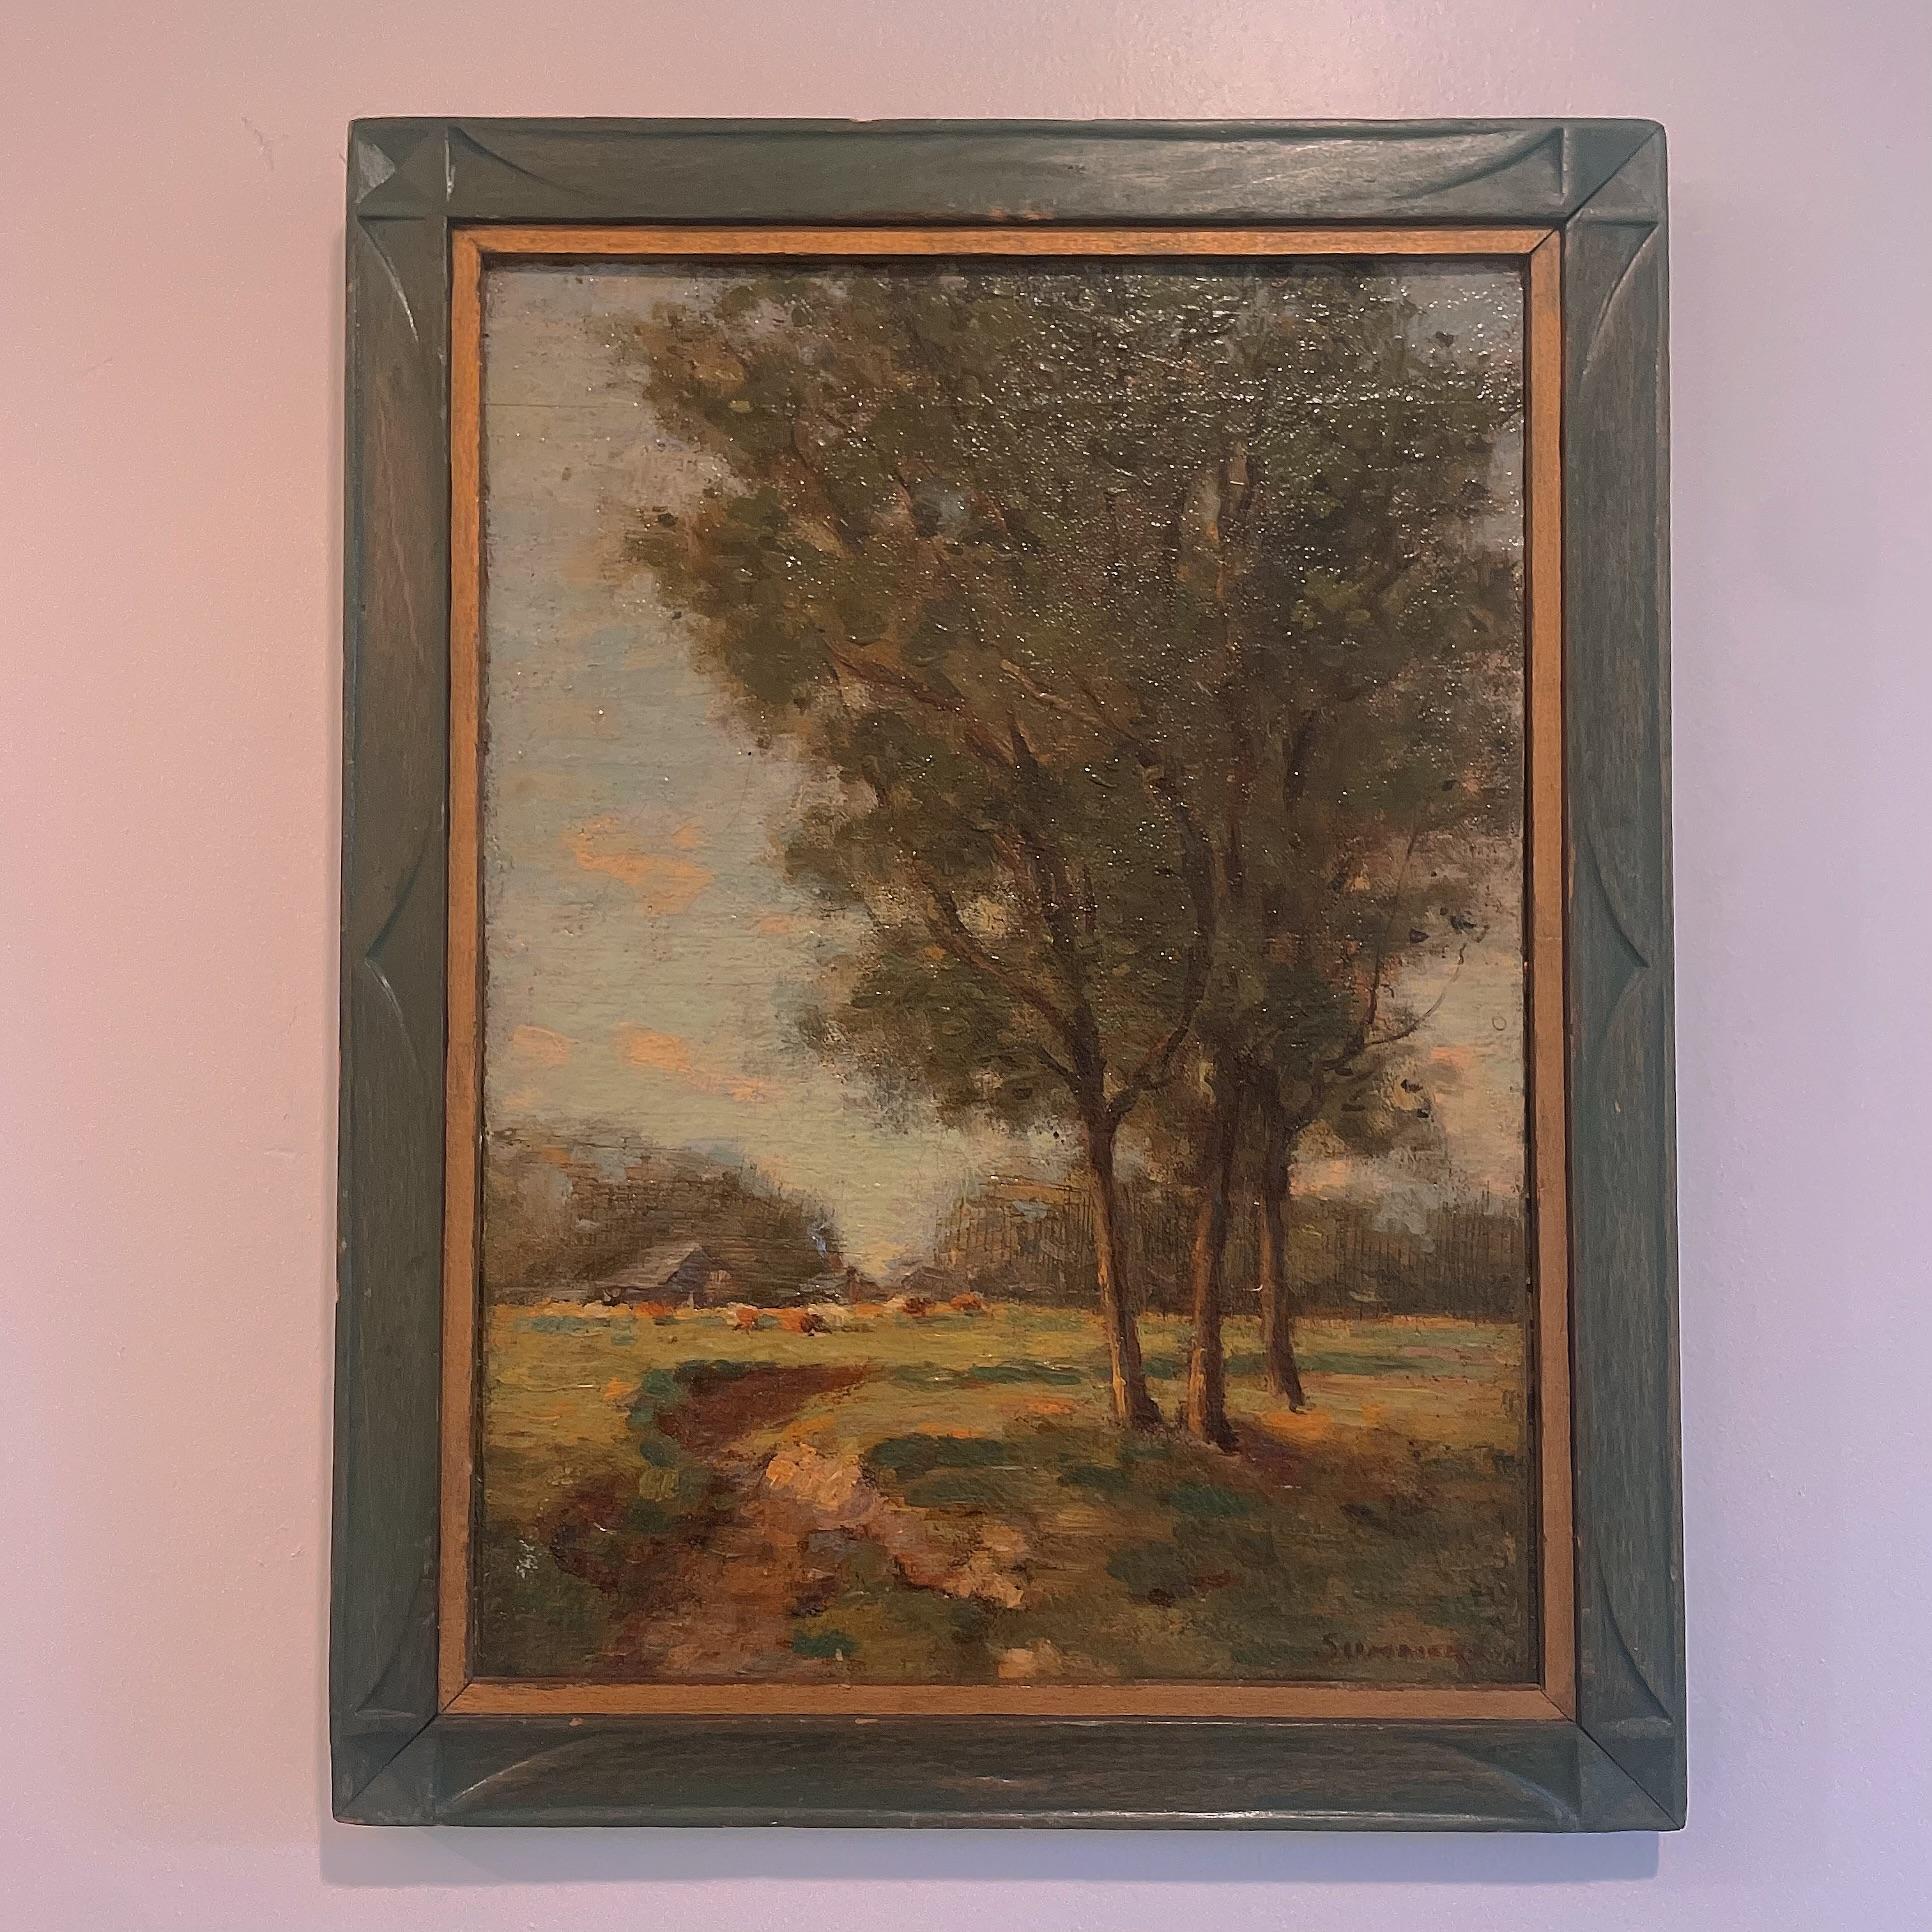 Vintage Landscape Original Oil Signed Summers - zugeschrieben Ivan Summers (American 1889-1964), Frühwerk, American Impressionist Artist Öl auf Leinwand Laid to Board. 

IVAN SUMMERS, 1889-1964, war ein bedeutender amerikanischer Künstler des